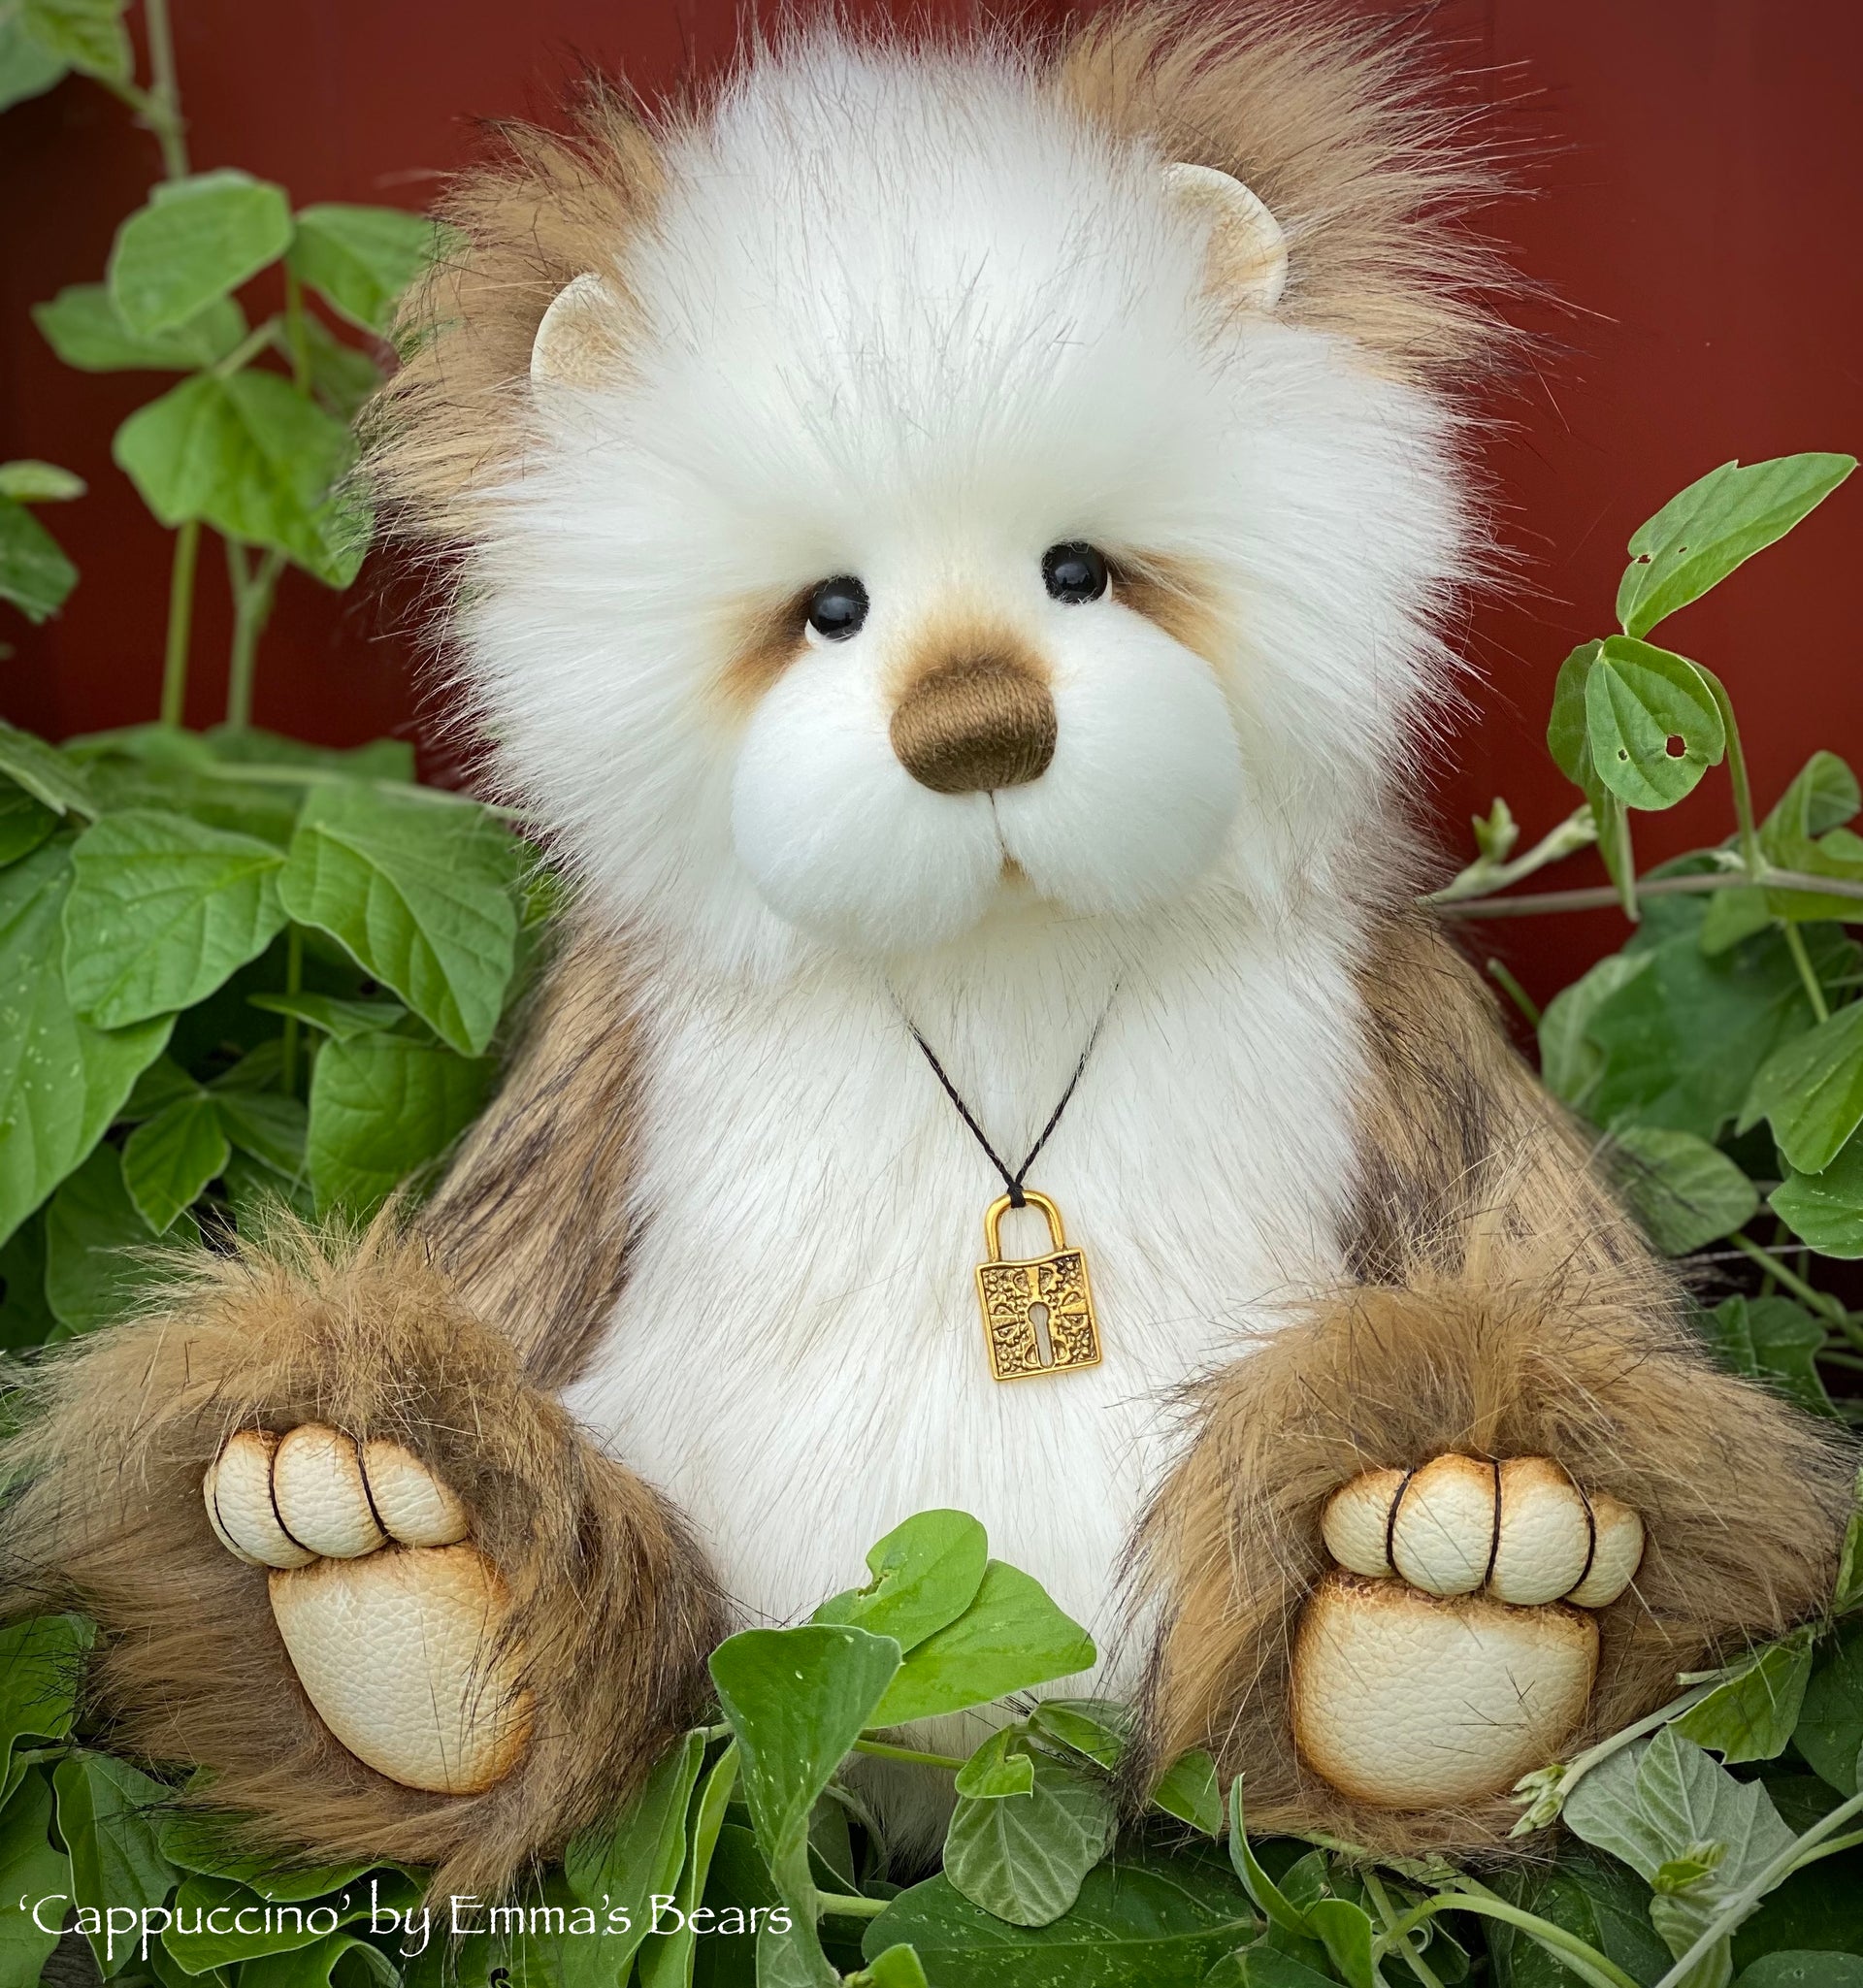 Cappuccino - 13" faux fur Artist Bear by Emma's Bears - OOAK